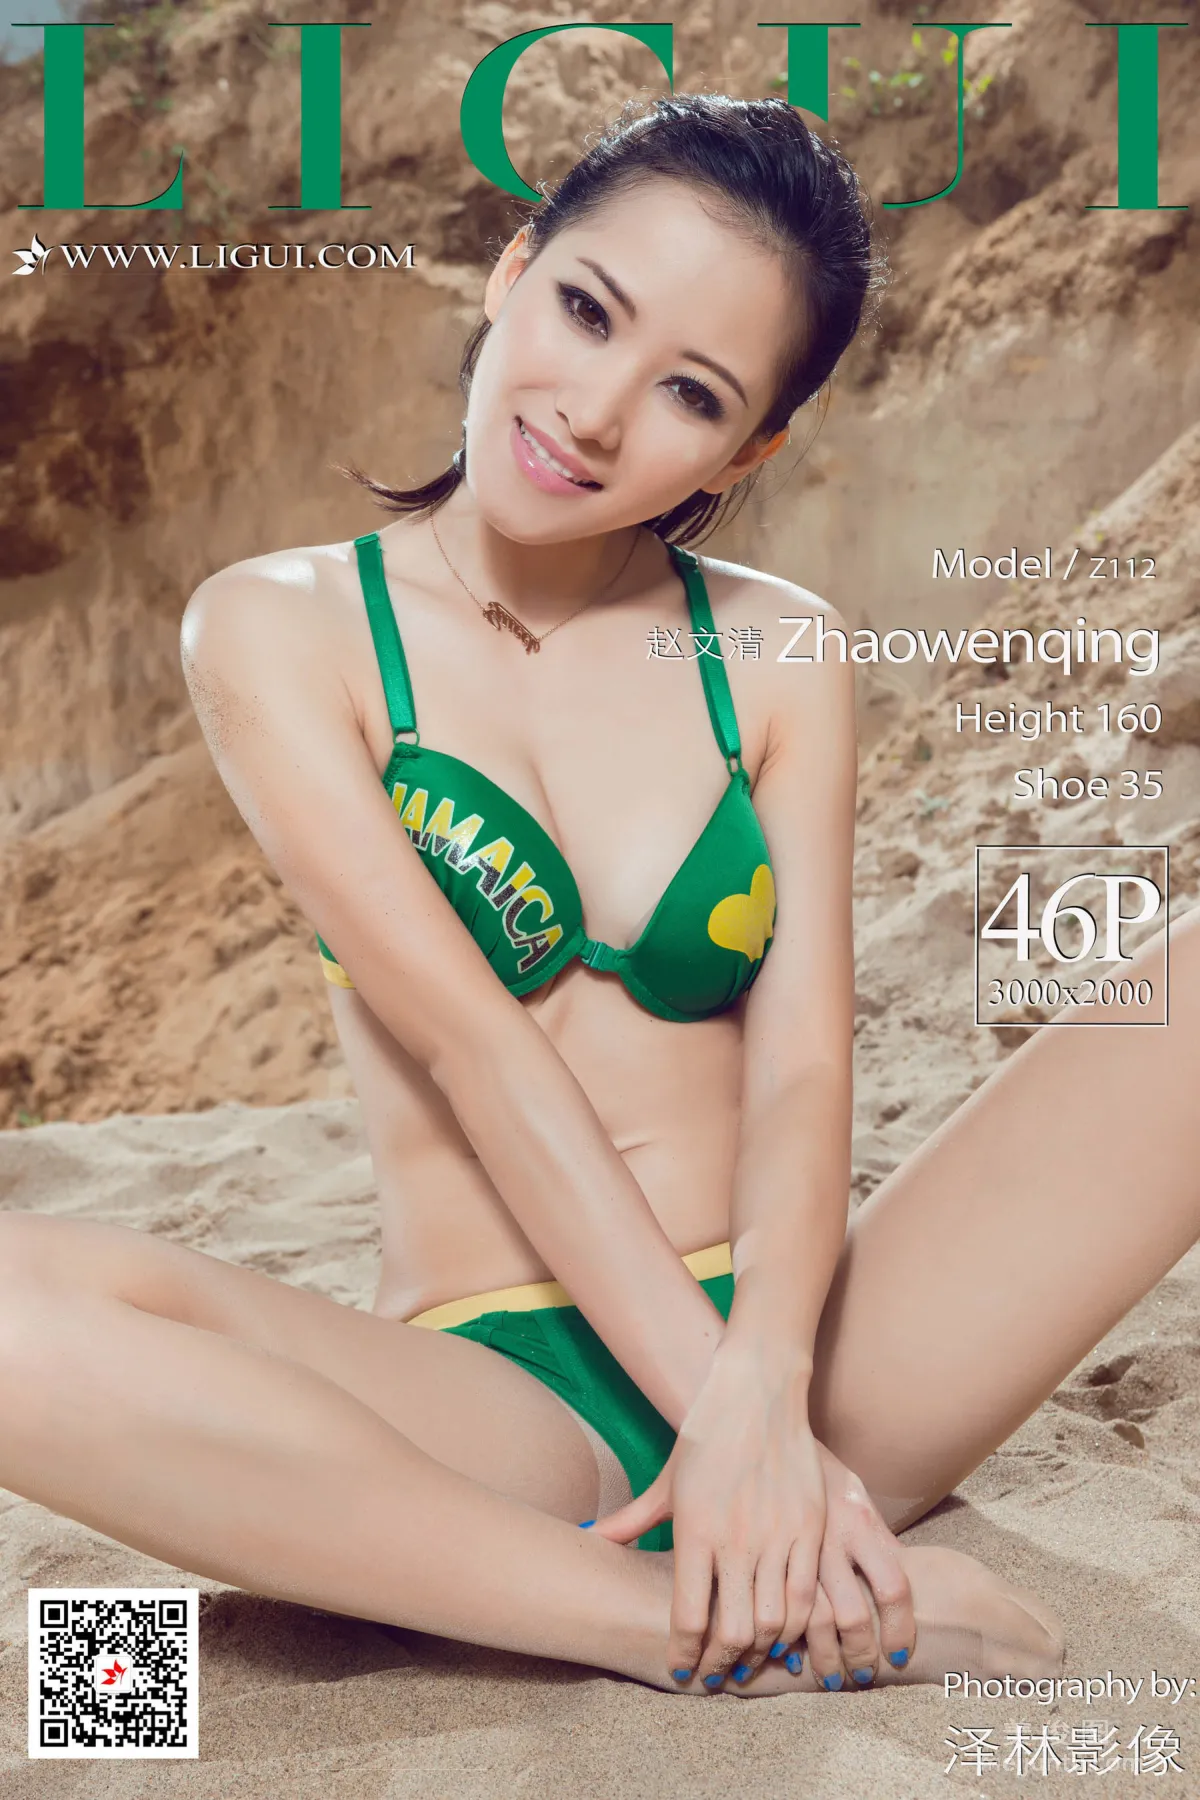 [丽柜Ligui] Model 赵文清 《沙滩比基尼》 写真集1